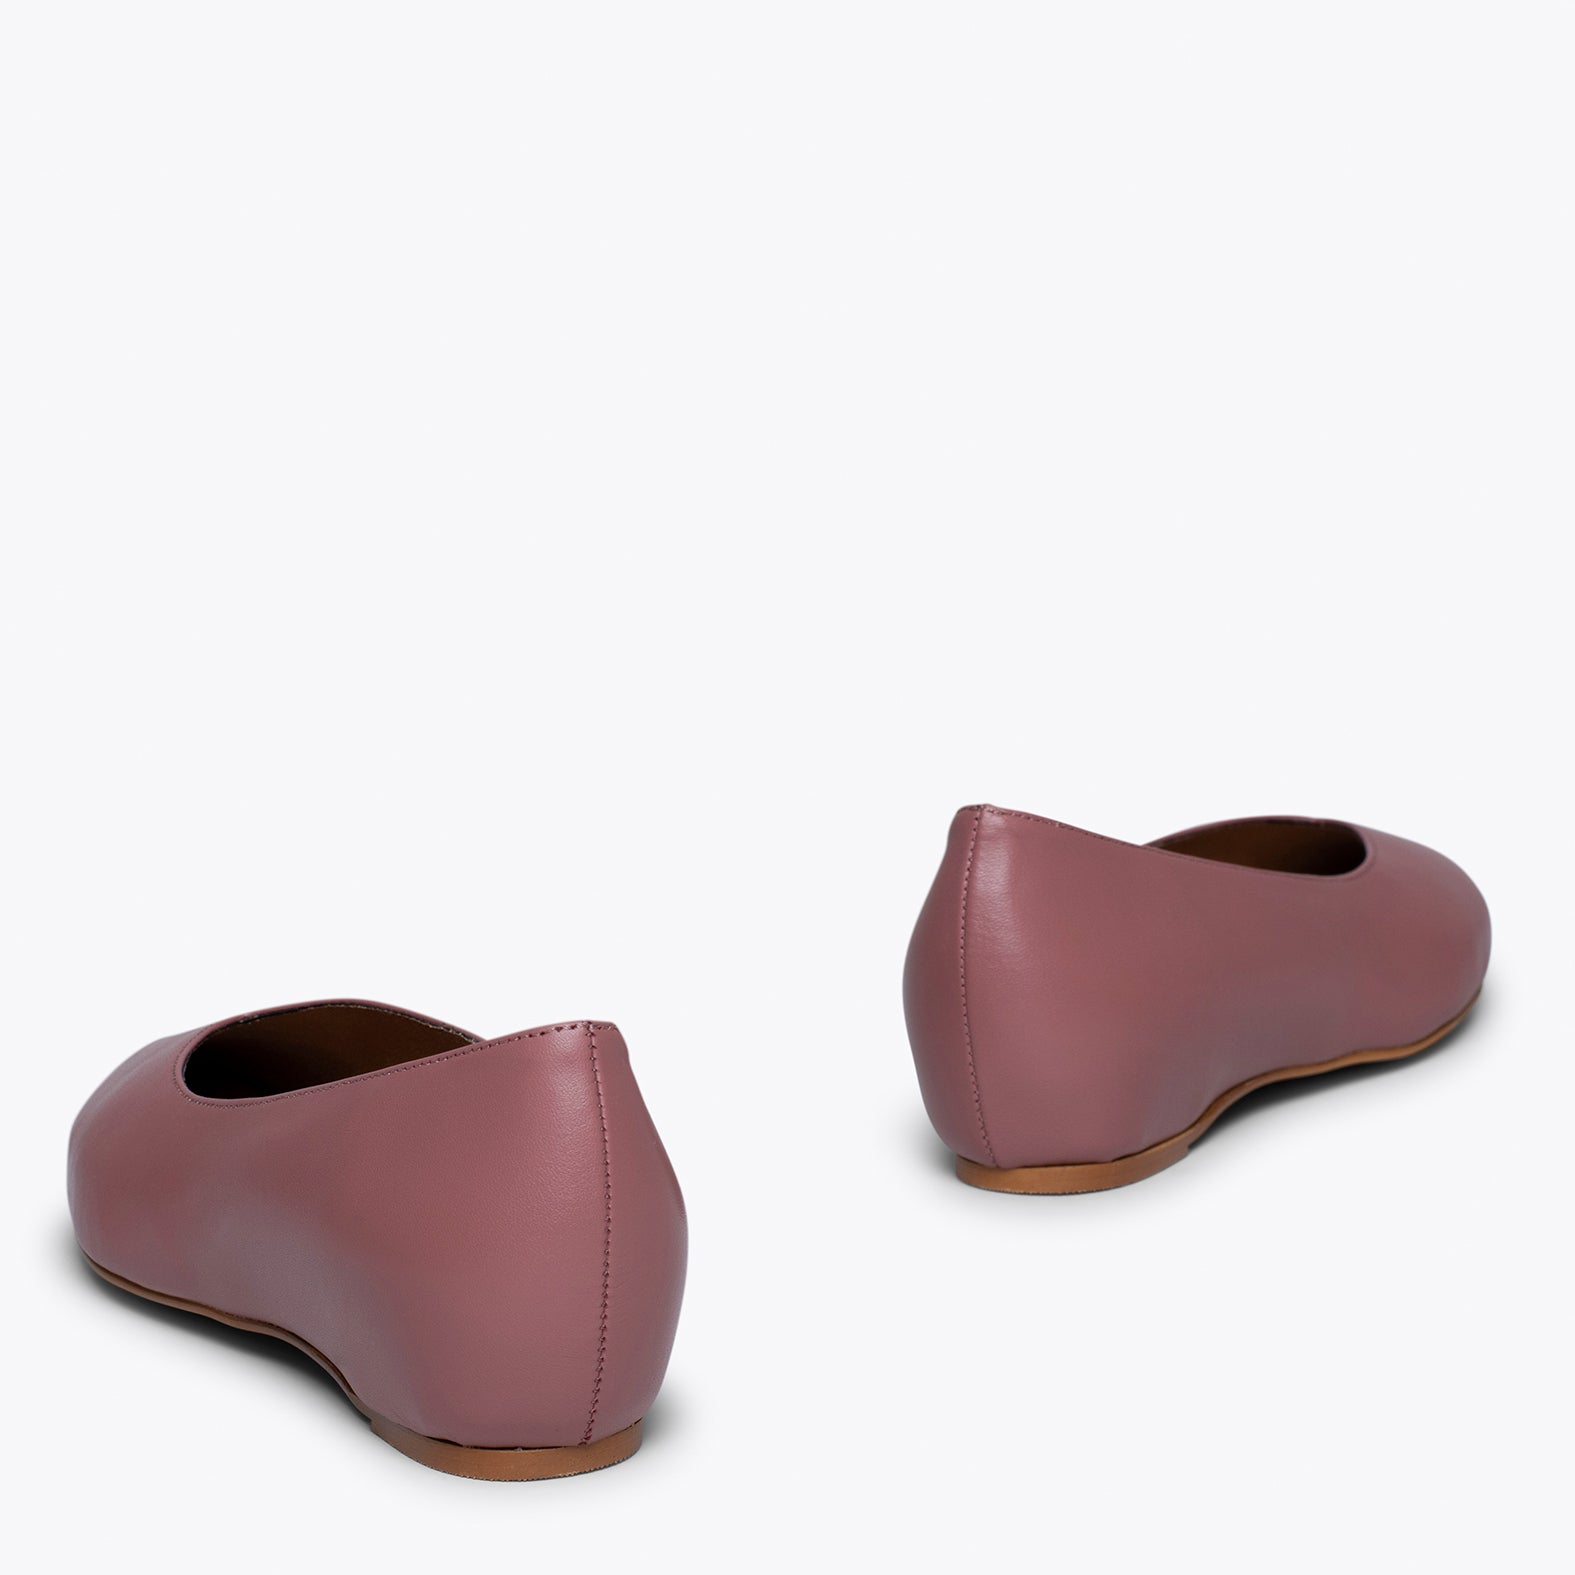 URBAN COMPENSÉ – Chaussures ROSE avec compensé intérieur